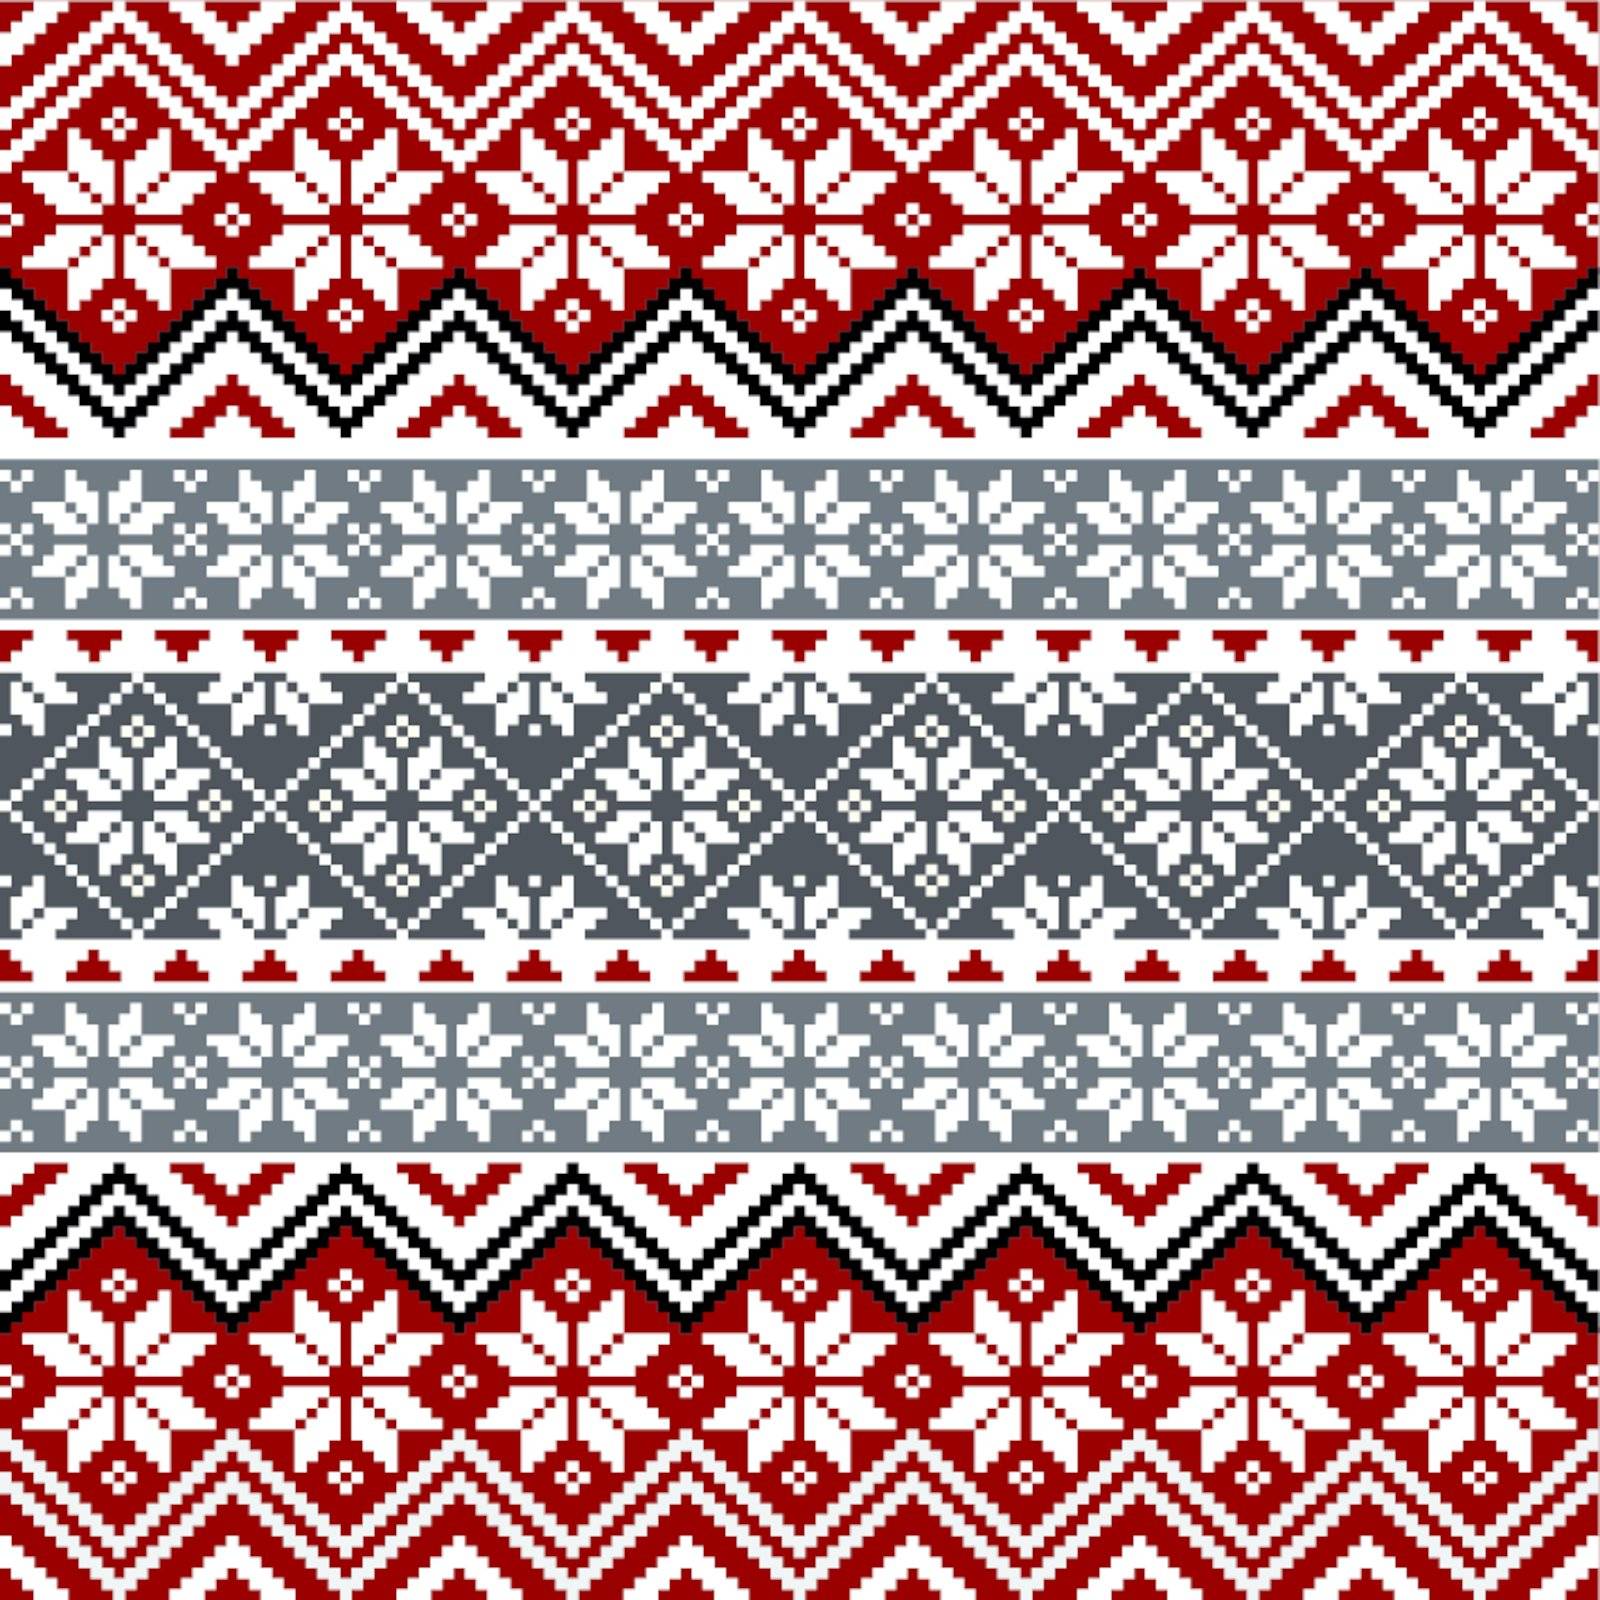 Nordic snowflake pattern by ElaK